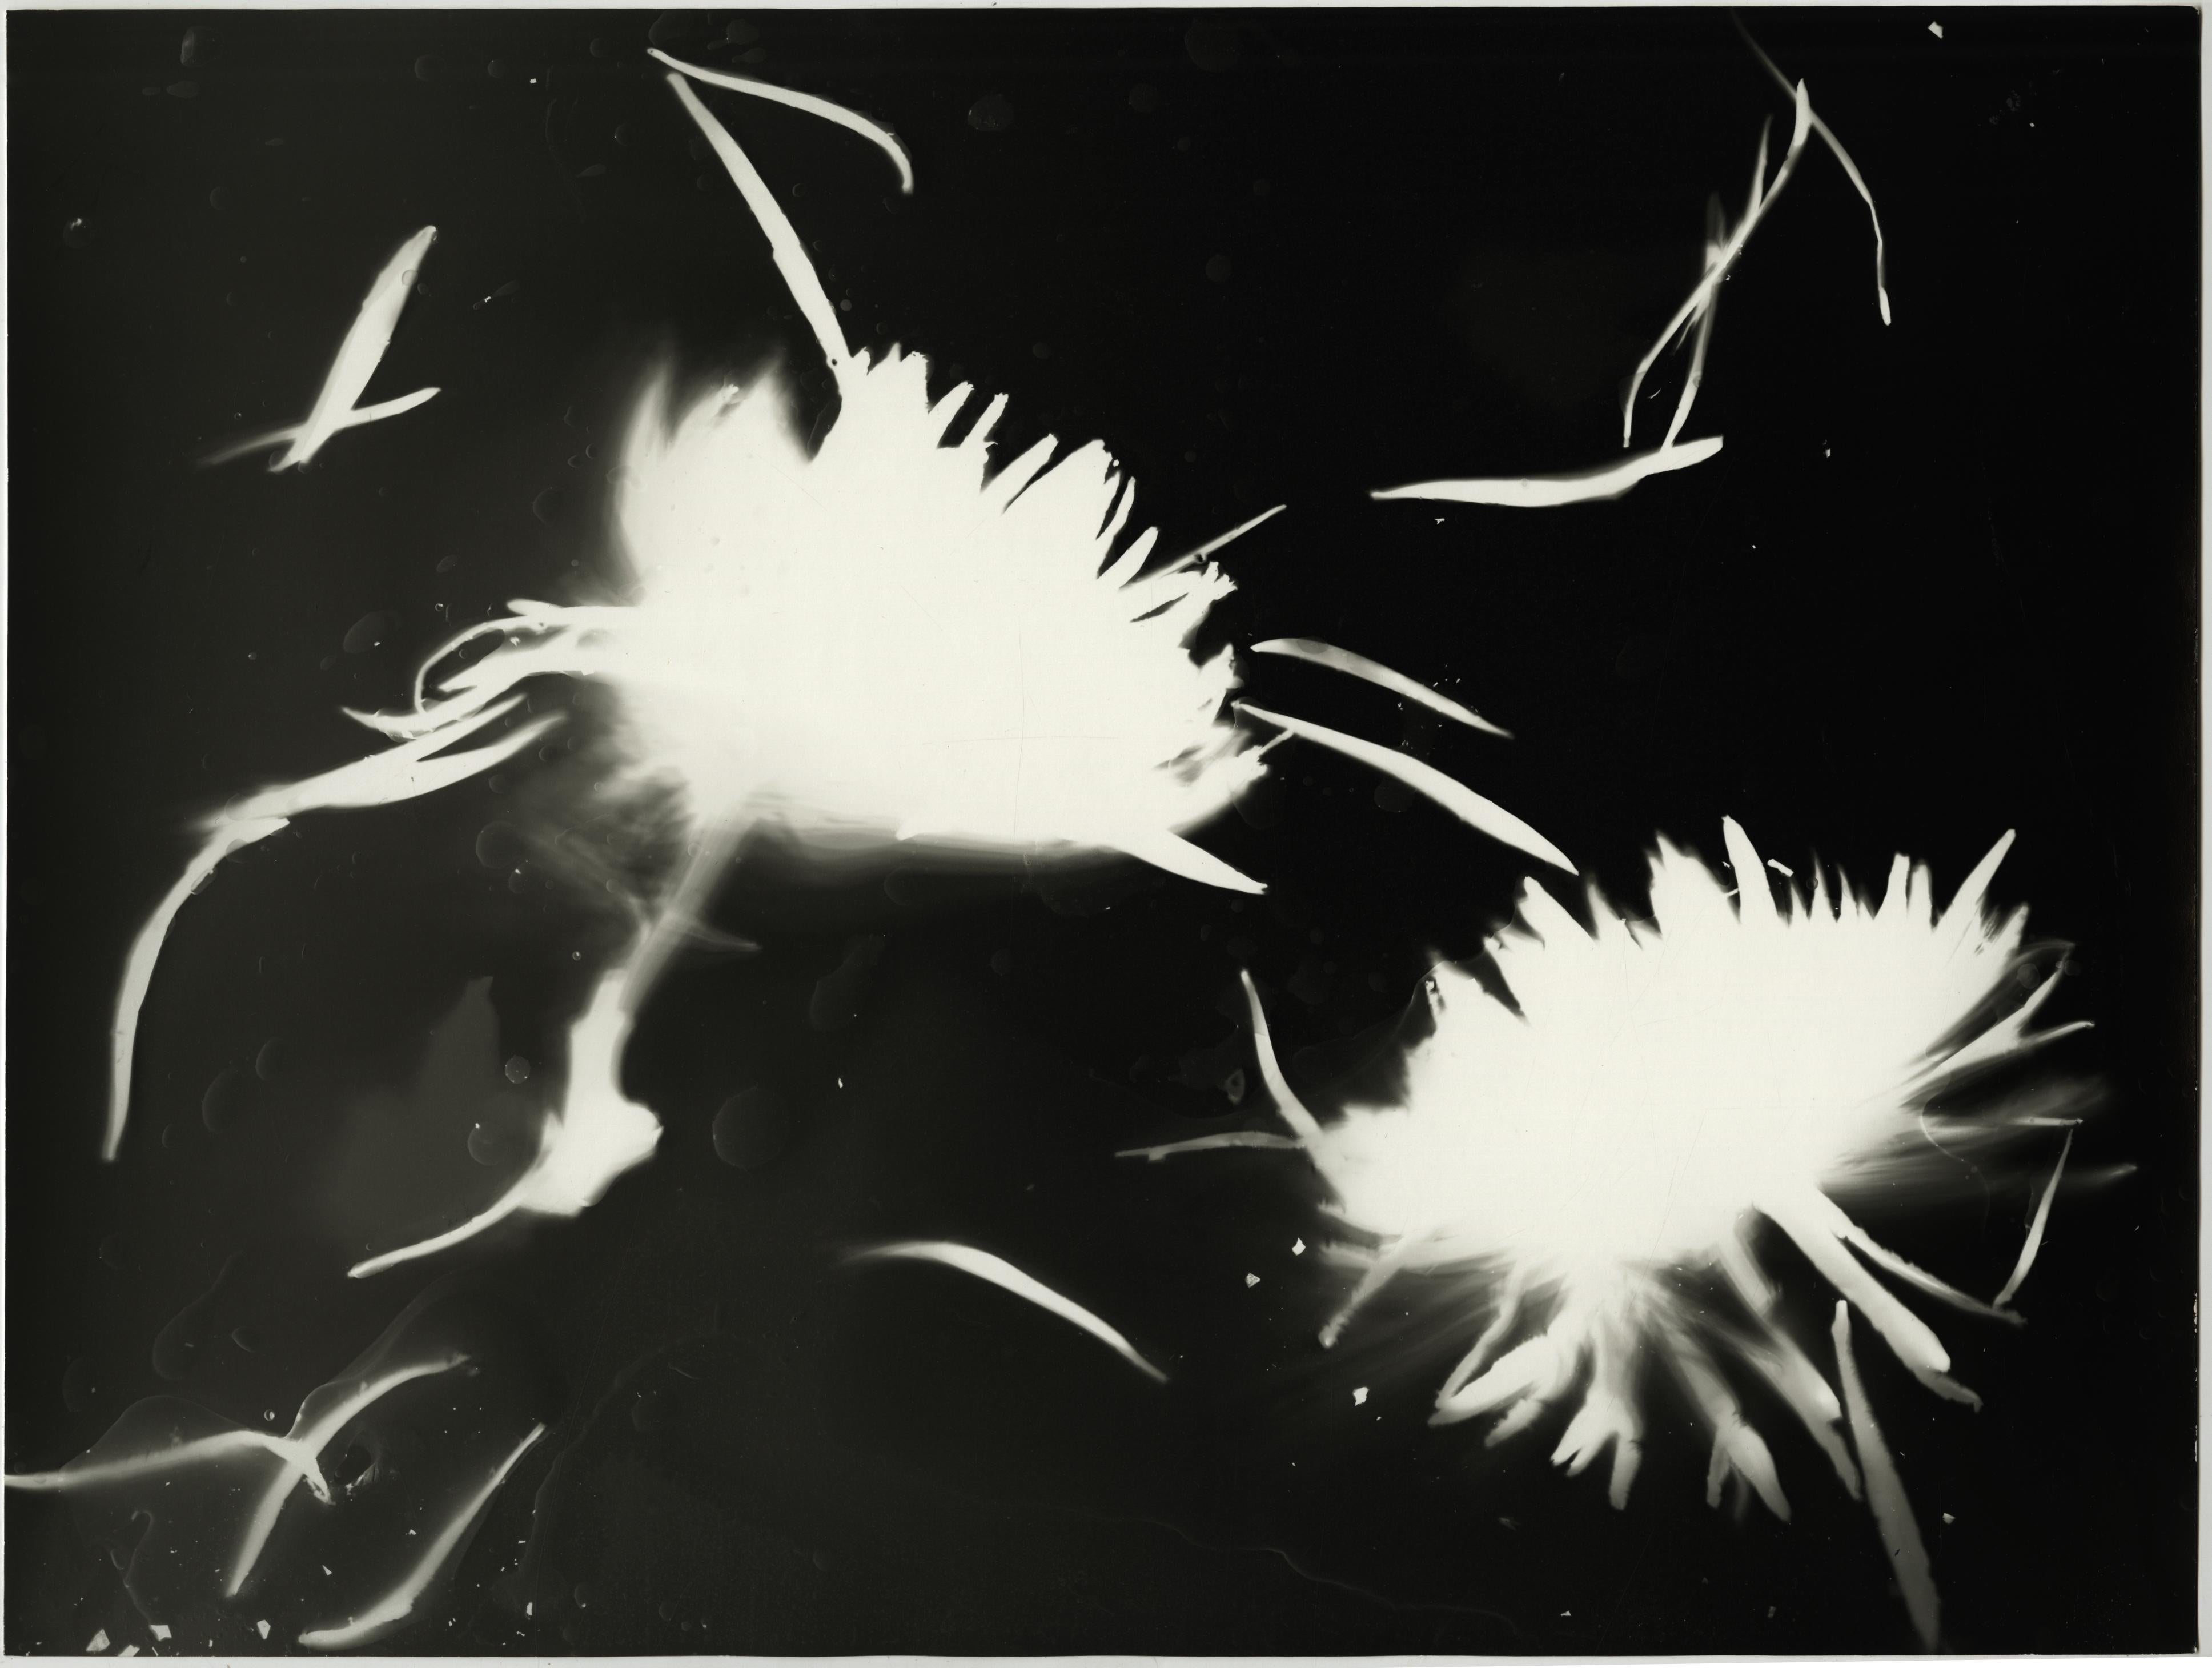 Black and White Photograph Kimberly Schneider Photography - Impression de fleurs - photographie de fleurs abstraites contemporaines en noir et blanc